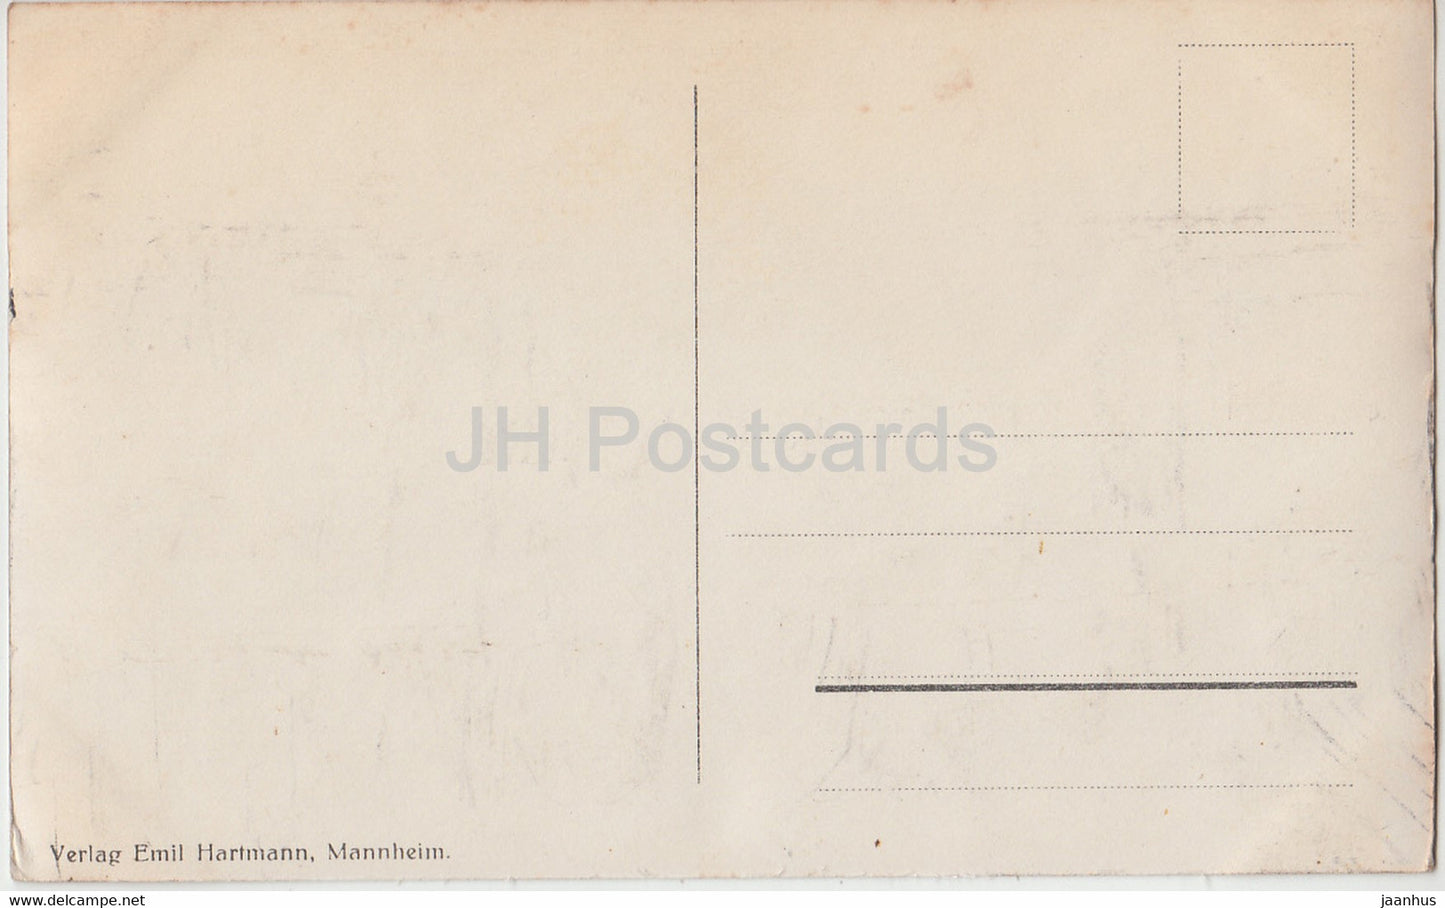 Titisee - 669 - old postcard - Germany - unused